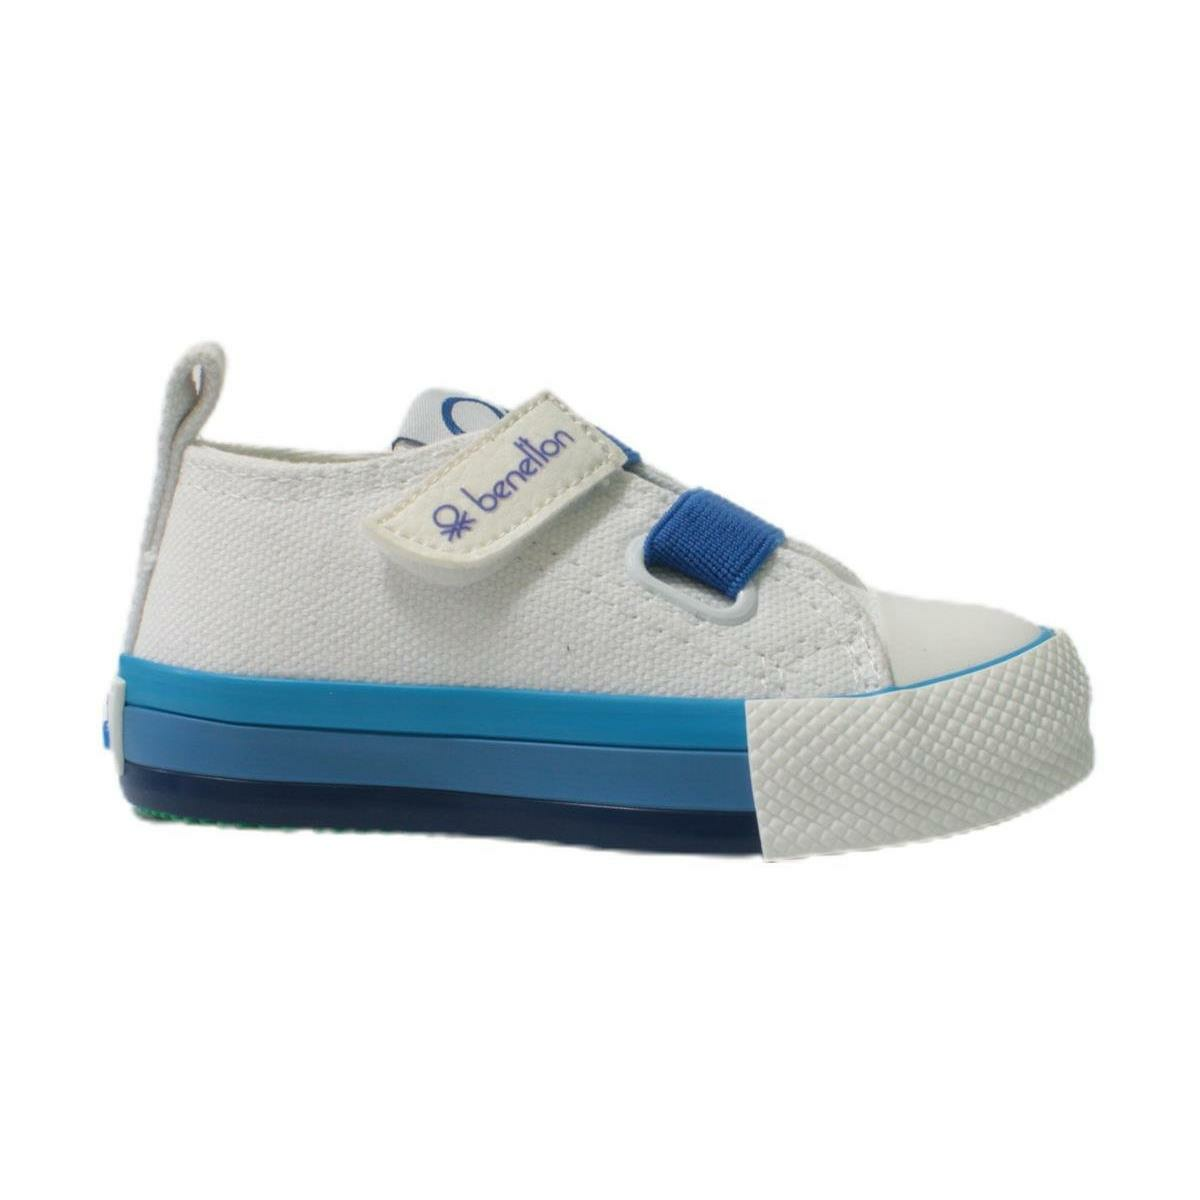 Benetton Bebek Beyaz Saks Mavi Keten Ayakkabı BN30648-688